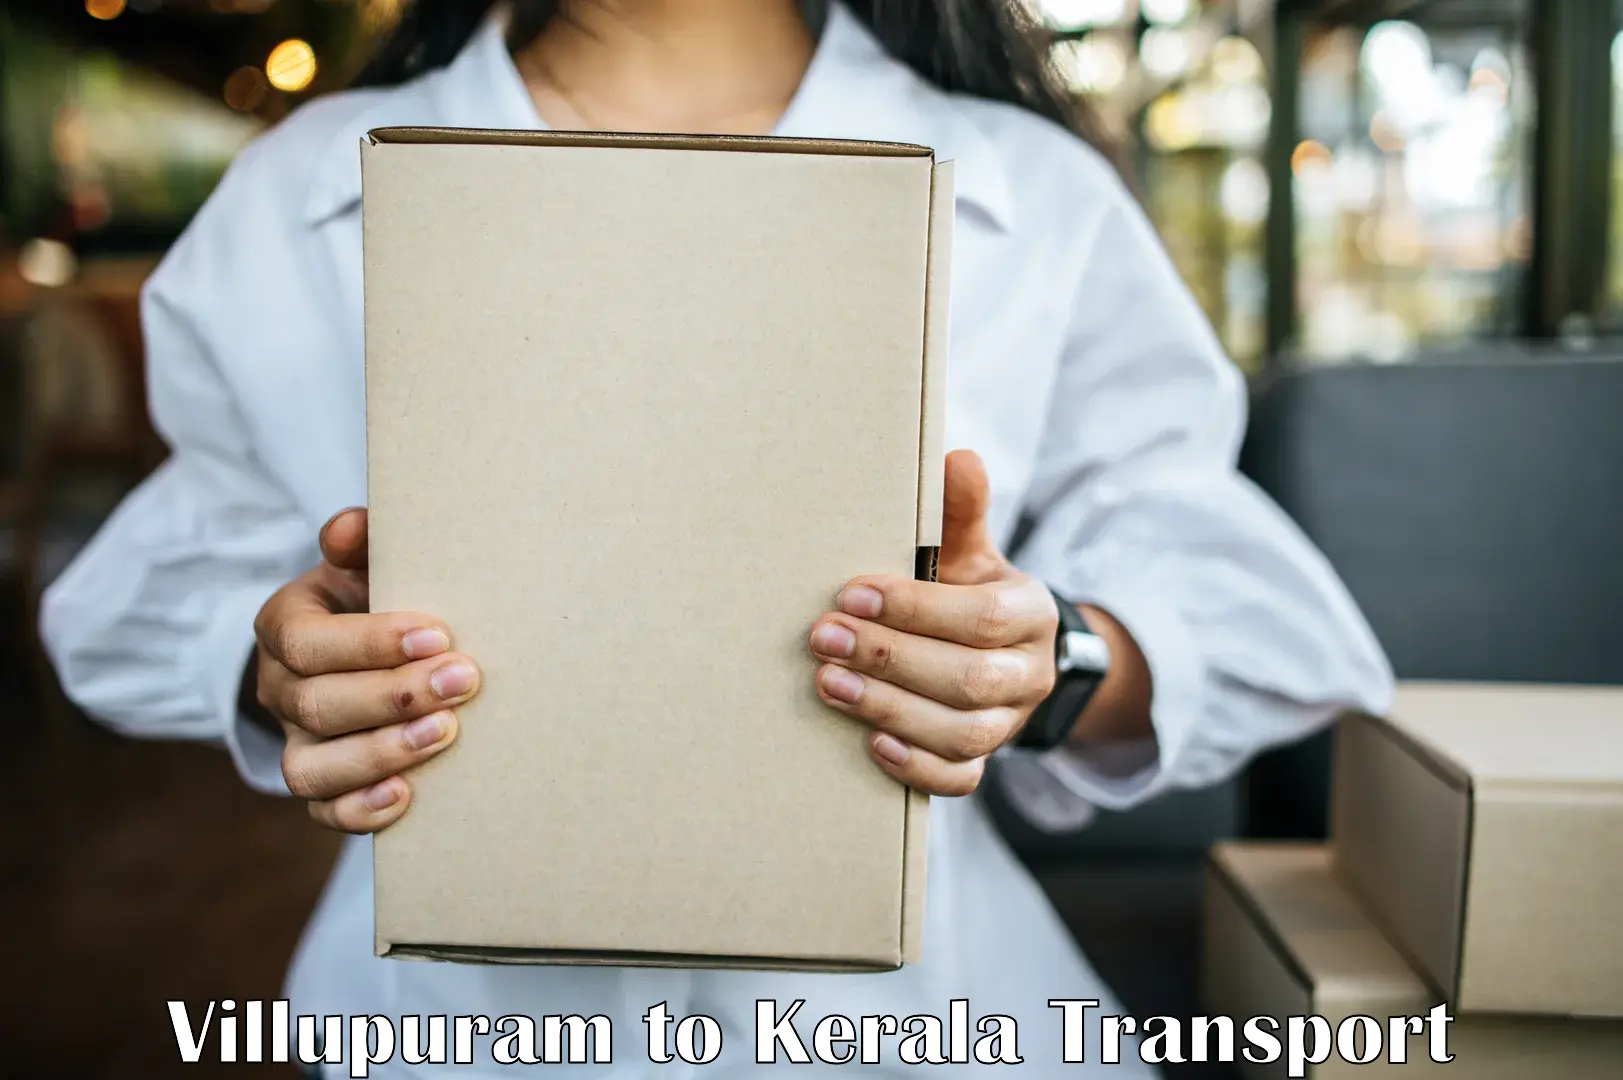 Nearest transport service Villupuram to IIIT Kottayam